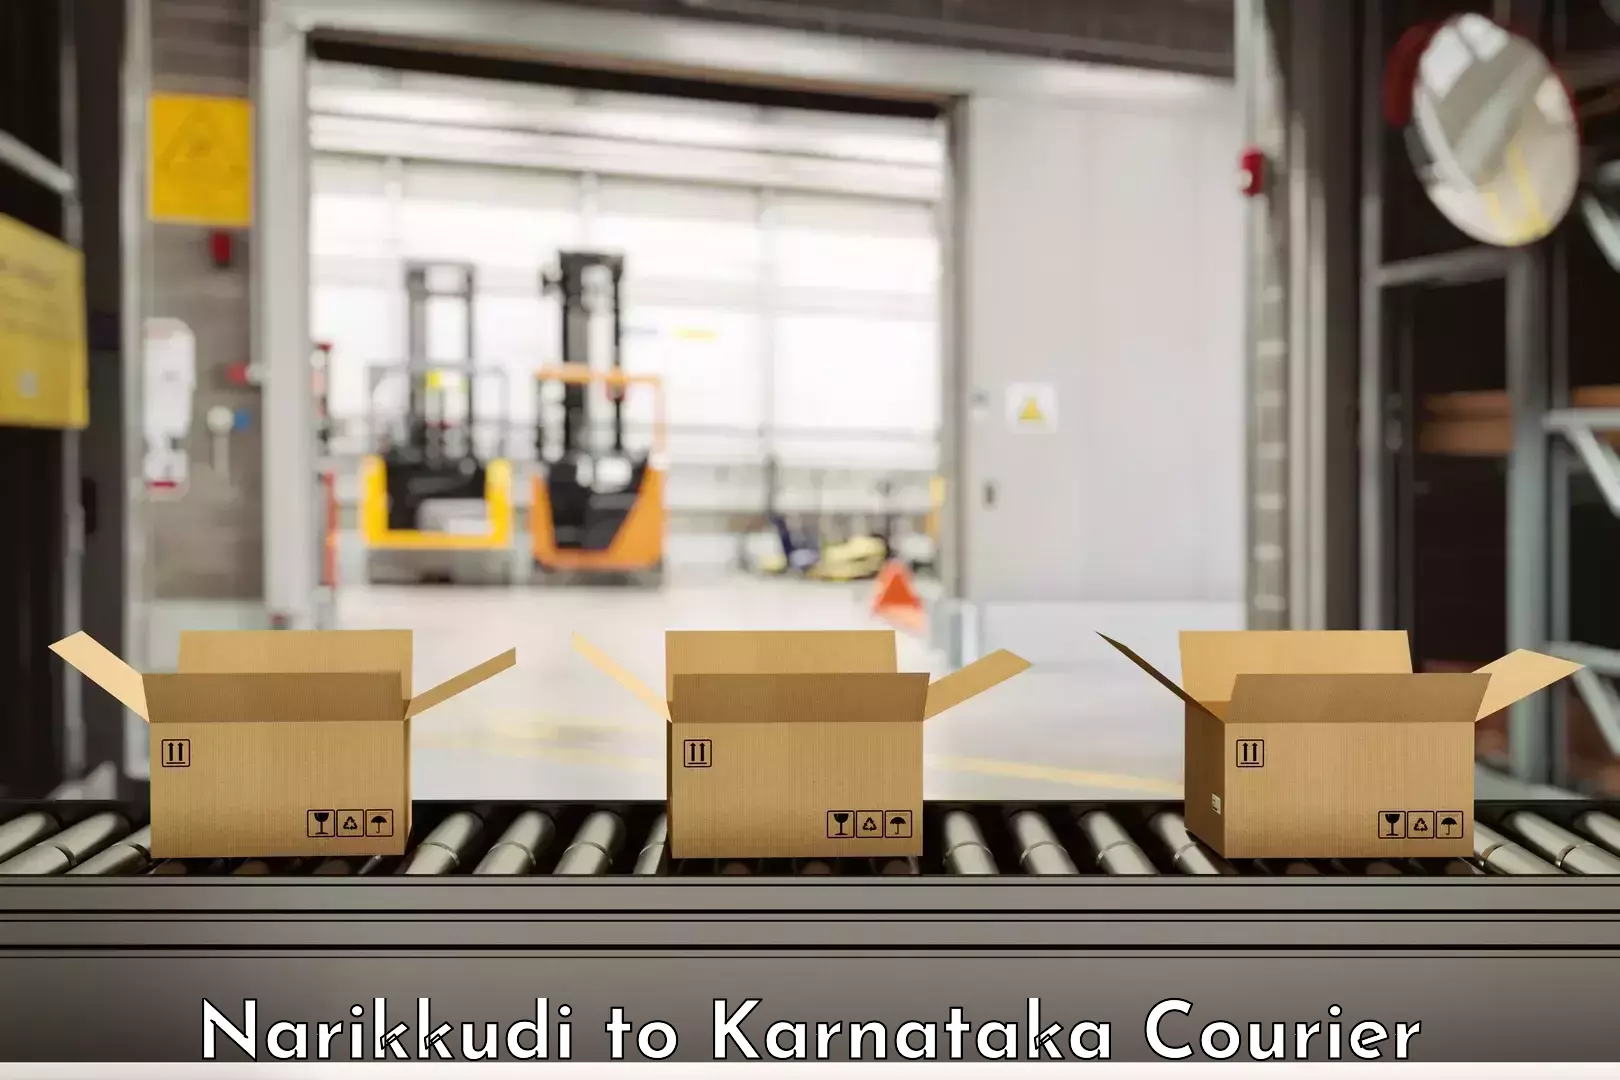 Furniture moving plans Narikkudi to Karnataka